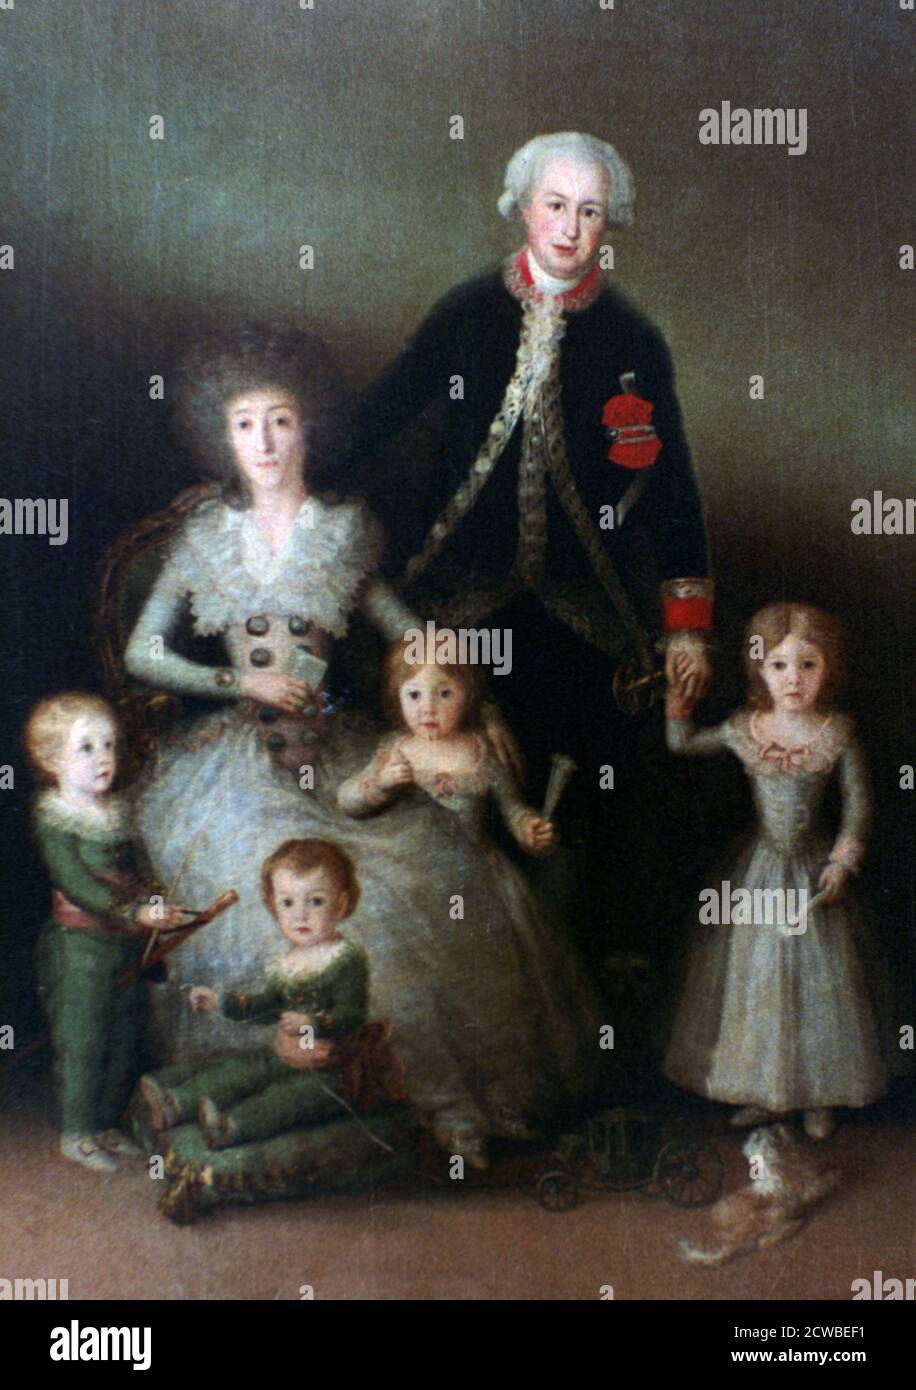 Le duc d'Osuna et sa famille, 1788. Artiste: Francisco Goya. Francisco Goya (1746-1828) était un artiste espagnol dont les peintures, dessins et gravures reflétaient des bouleversements historiques contemporains et influençaient d'importants peintres des XIXe et XXe siècles. Banque D'Images